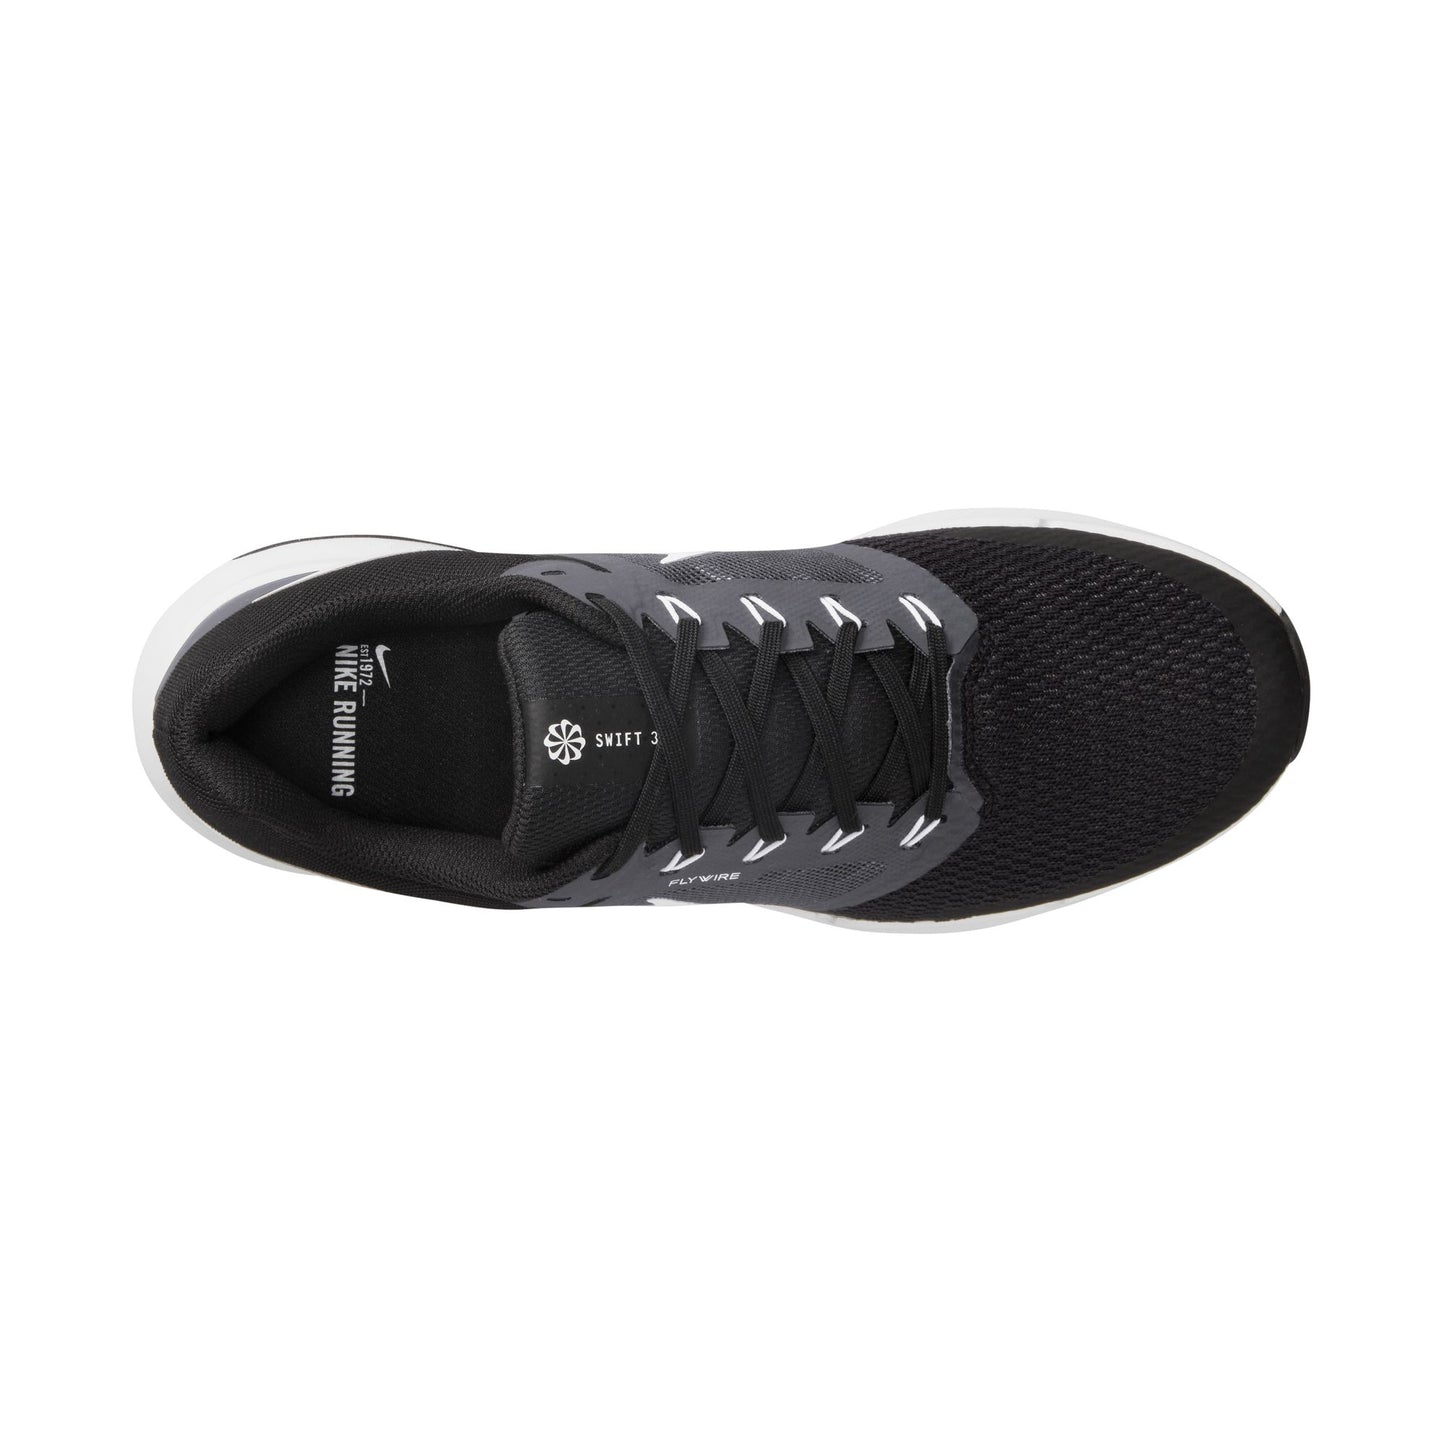 נעלי ספורט לגברים Run Swift 3 בצבע שחור ולבן